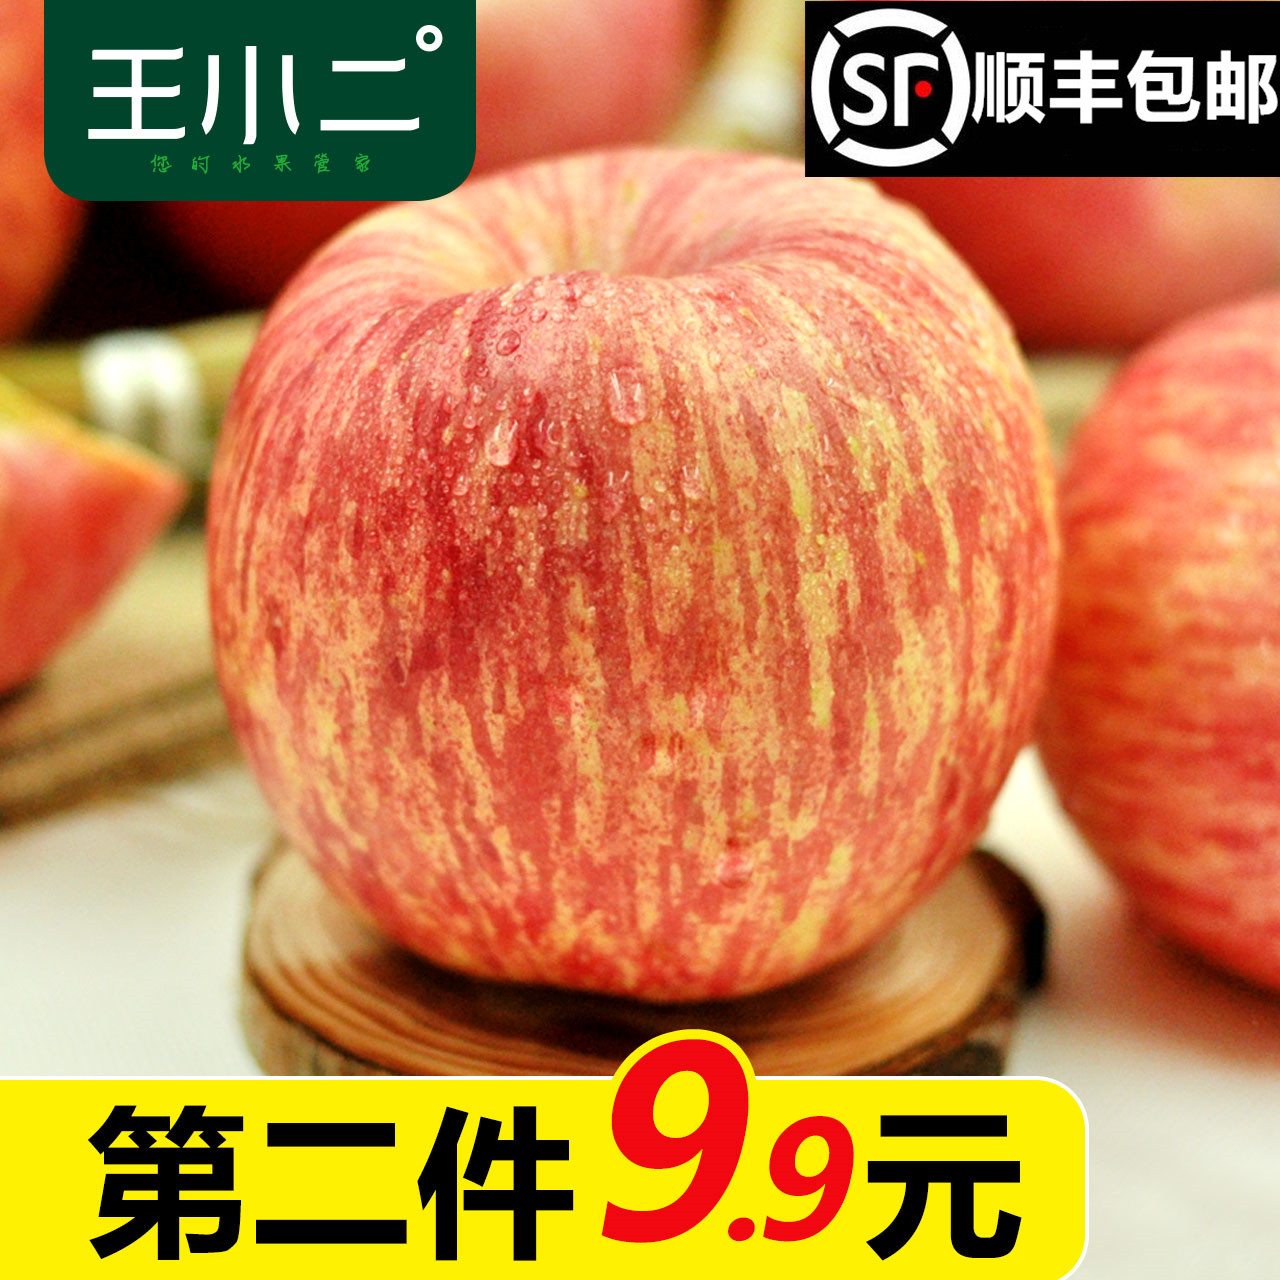 新鲜苹果水果山东烟台栖霞红富士包邮野生丑平吃的5斤1王小二果园